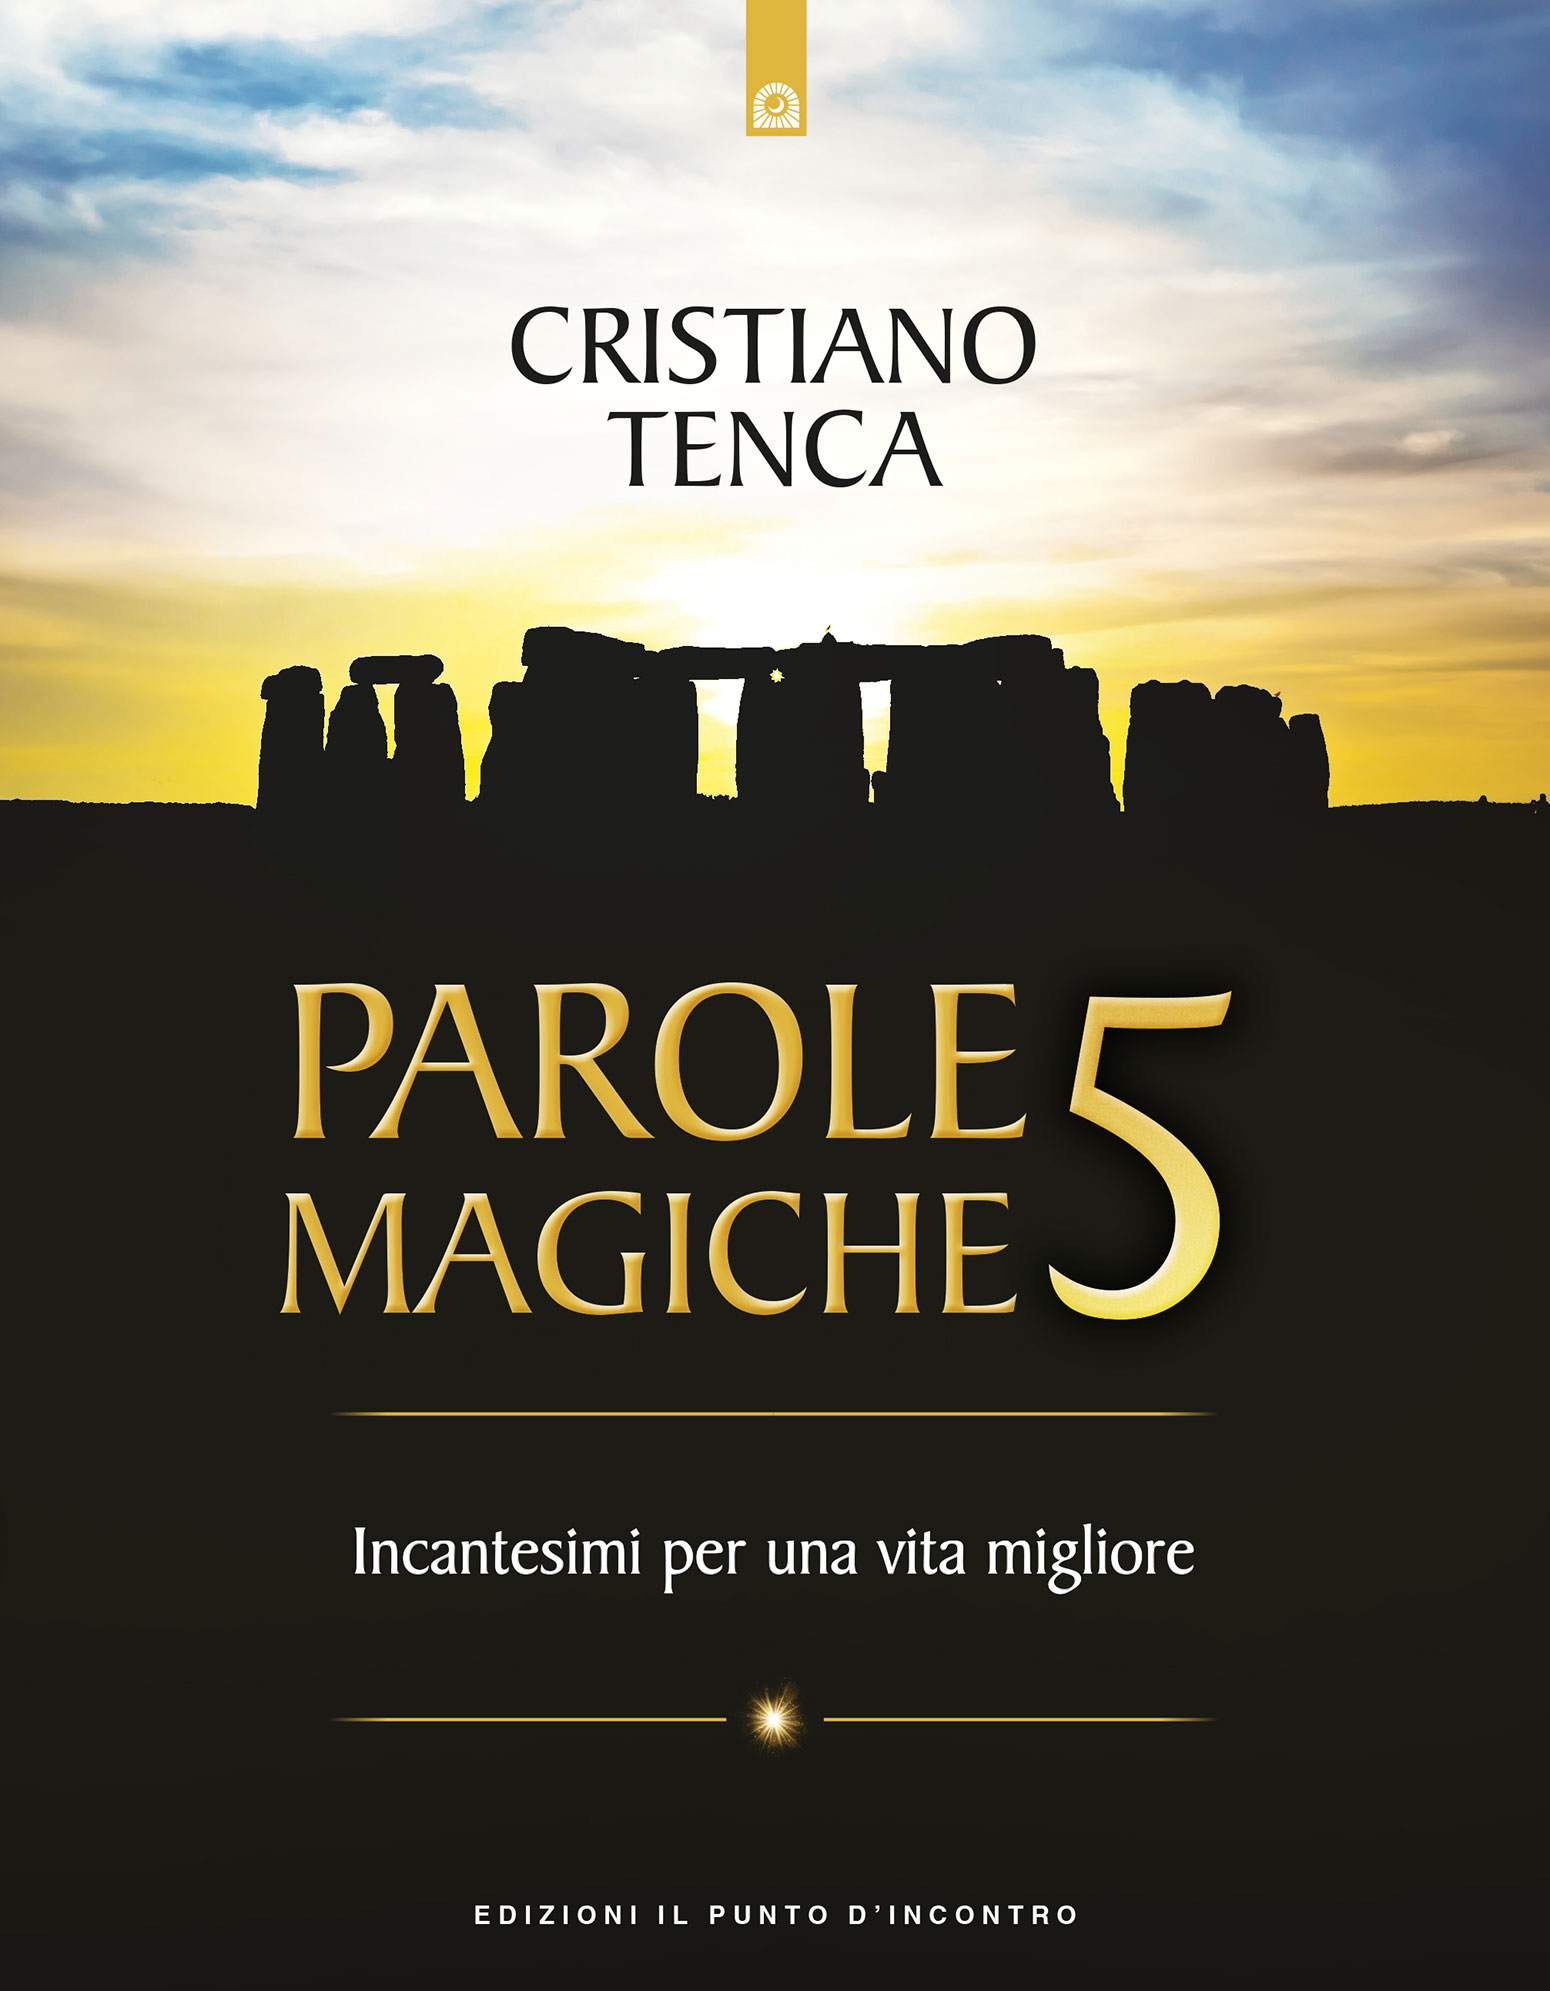 Libro "Parole magiche 5" di Cristiano Tenca